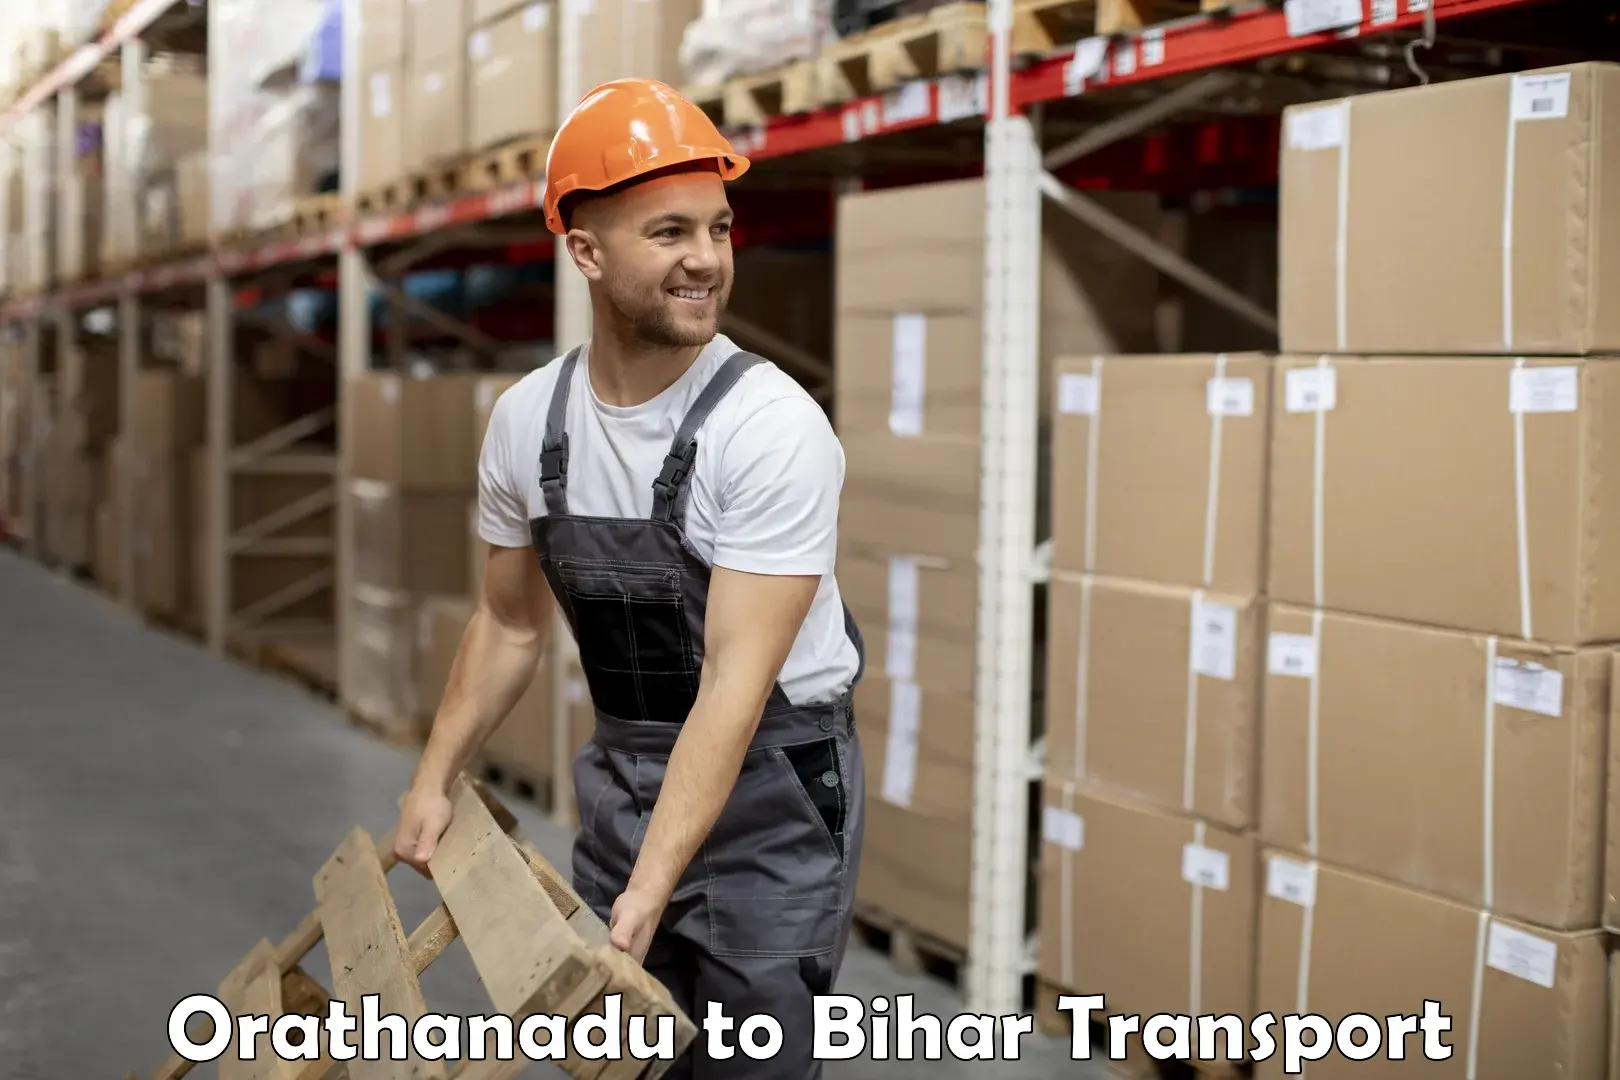 Shipping services Orathanadu to Hasanpura